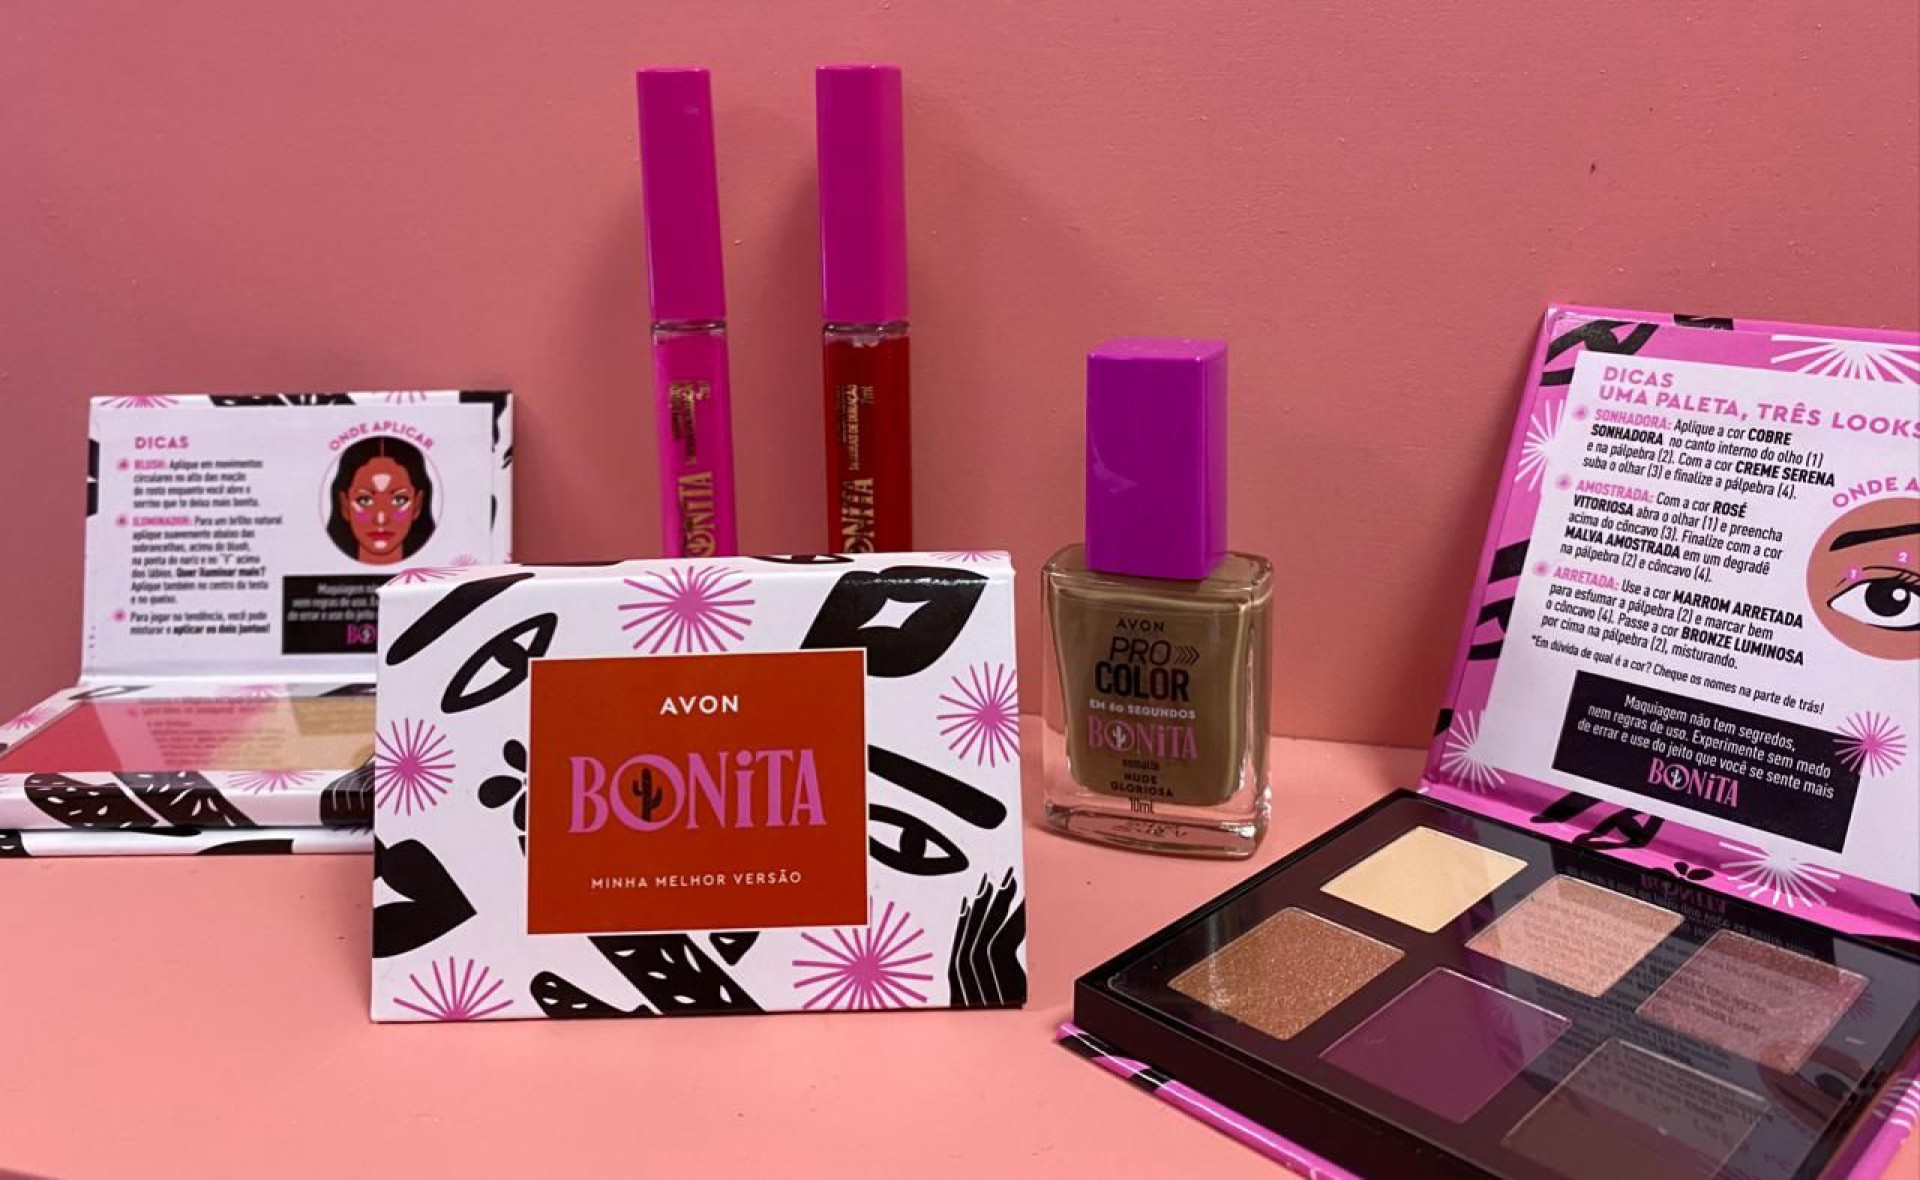 Avon lança Bonita, coleção limitada com produtos selecionados pela Juliette  Freire